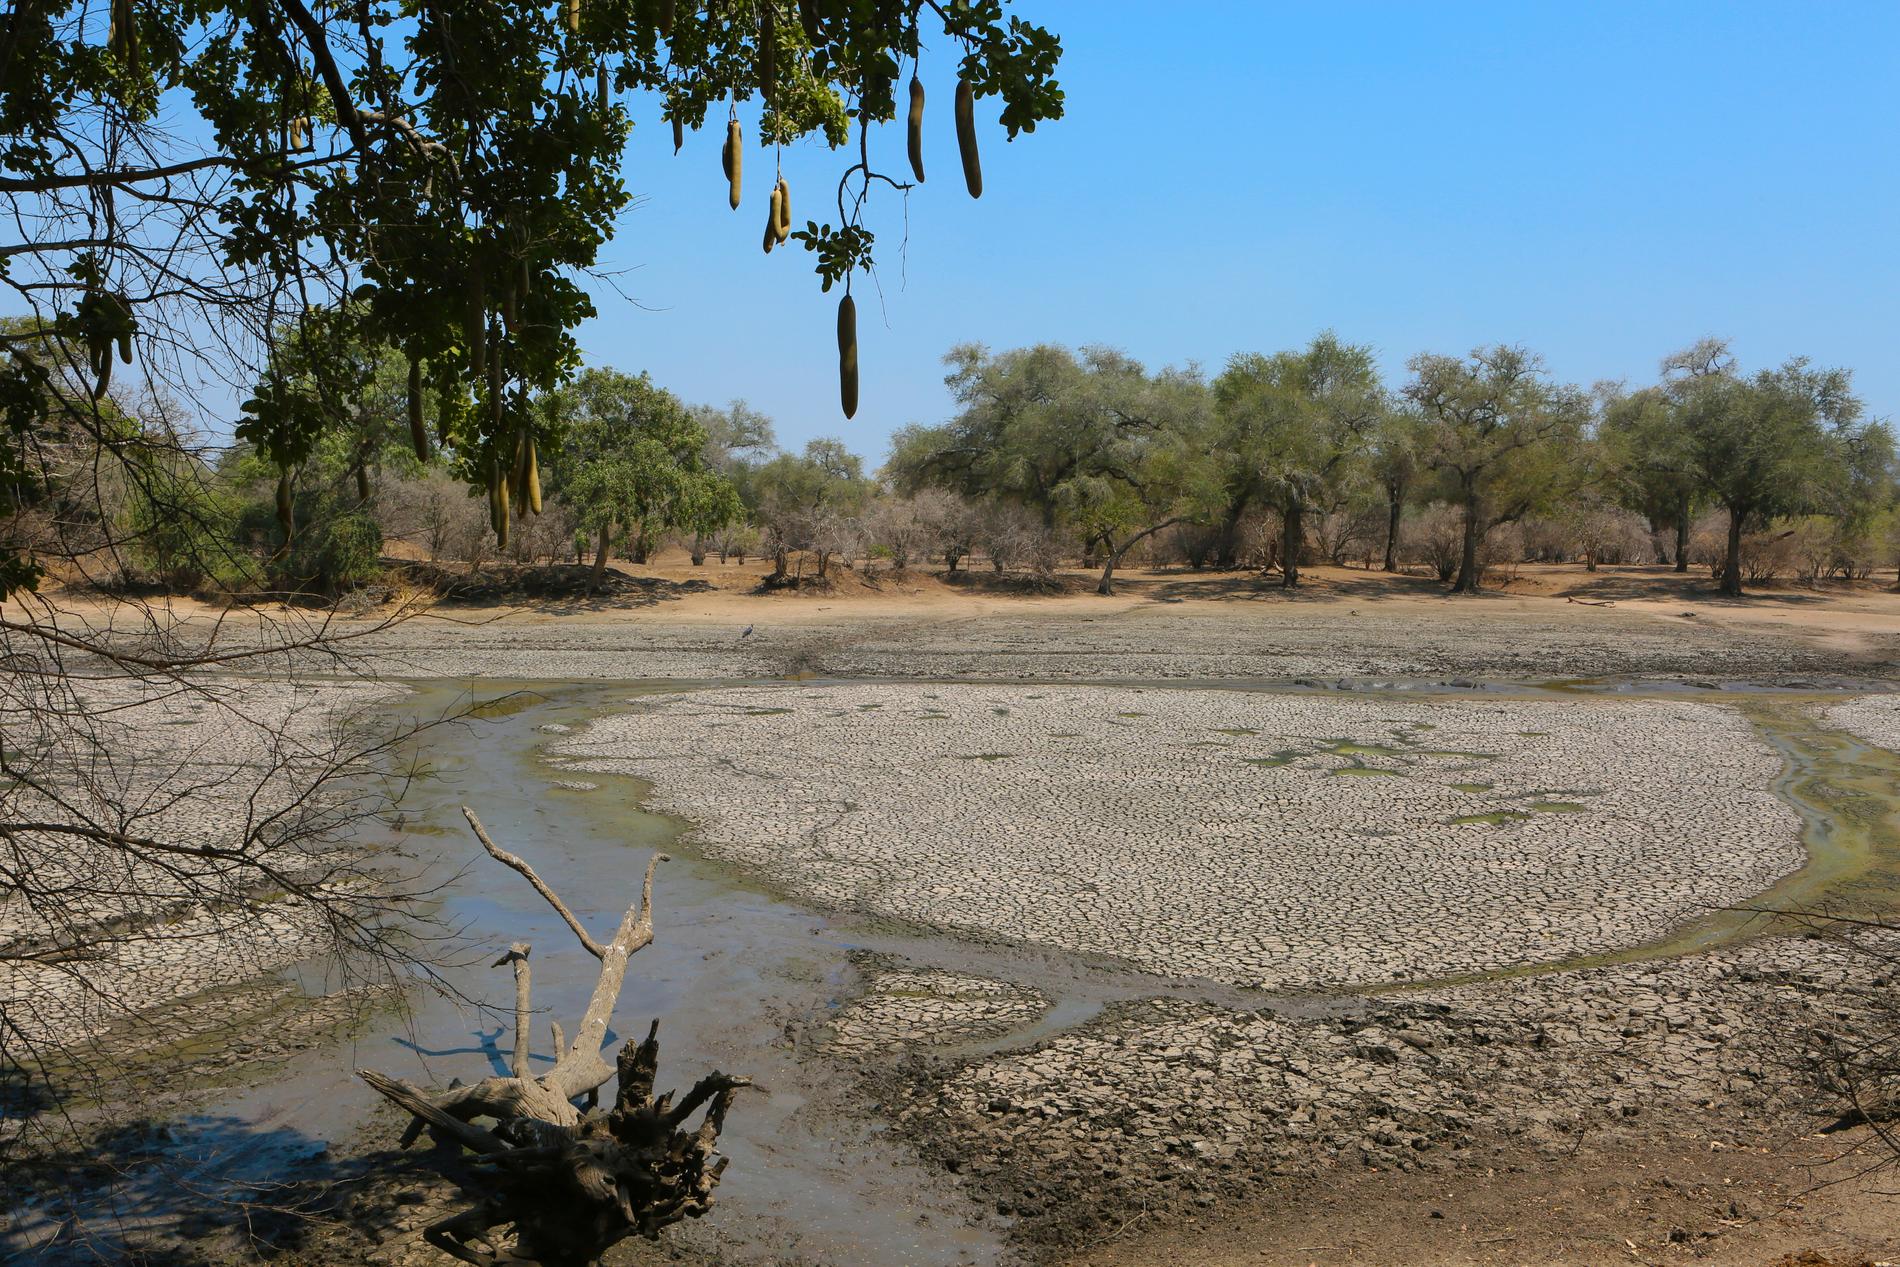 Omkring 45 miljoner människor står inför svår matbrist på grund av torkan i södra Afrika, varnar FN. Bilden är från en uttorkad vattenkälla i Zimbabwe. Arkivbild.